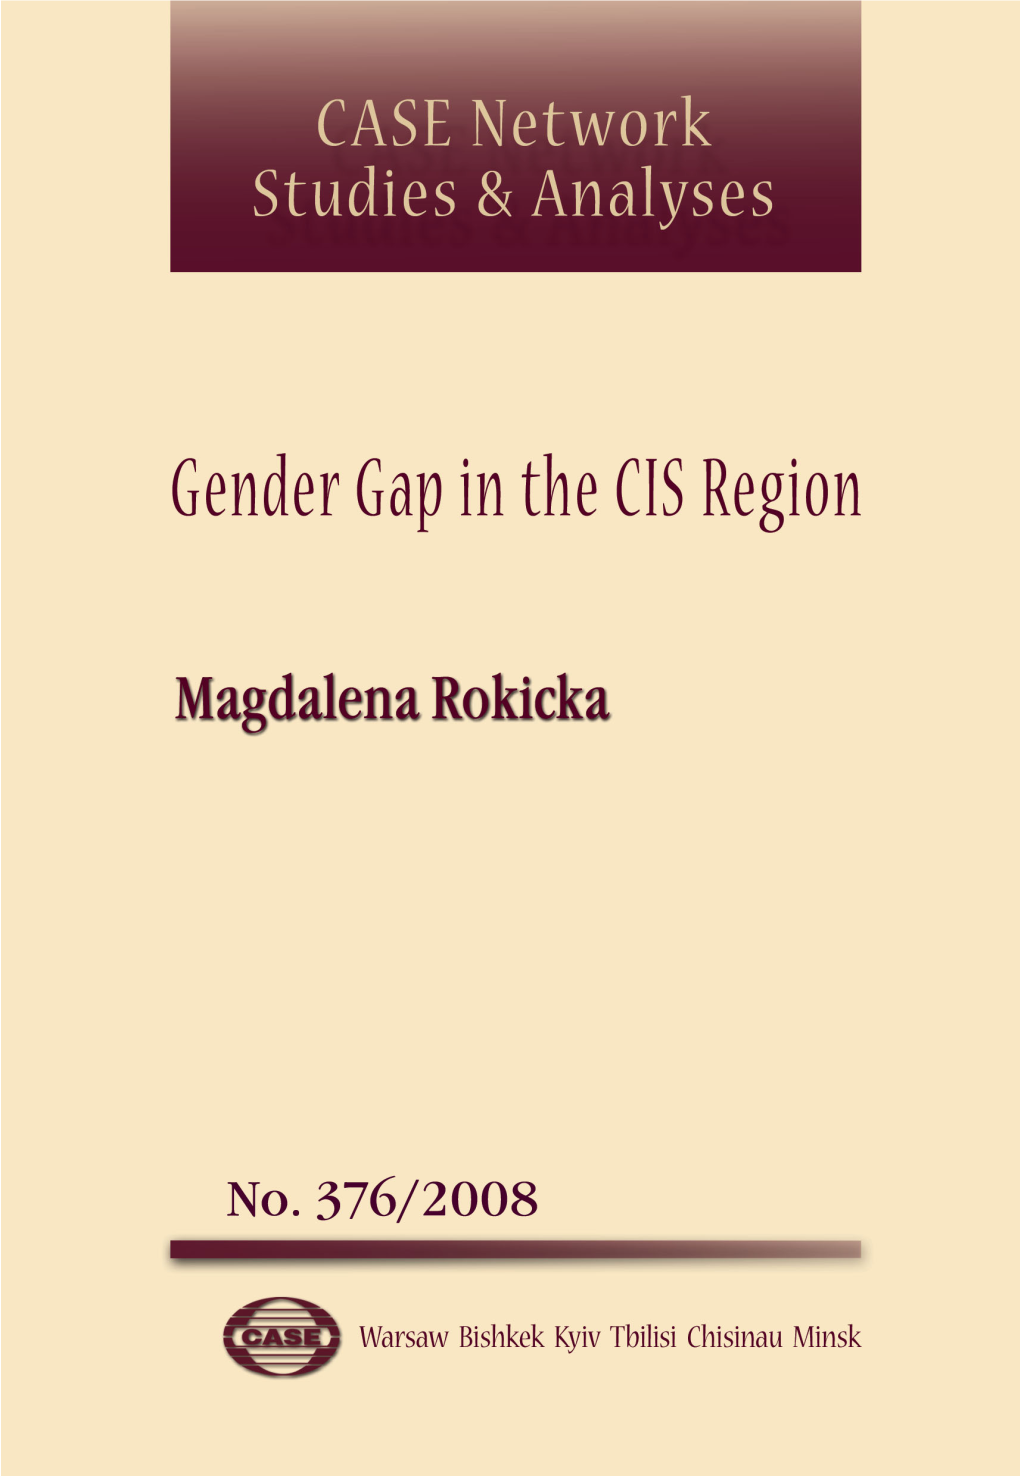 Gender Gap in the CIS Region